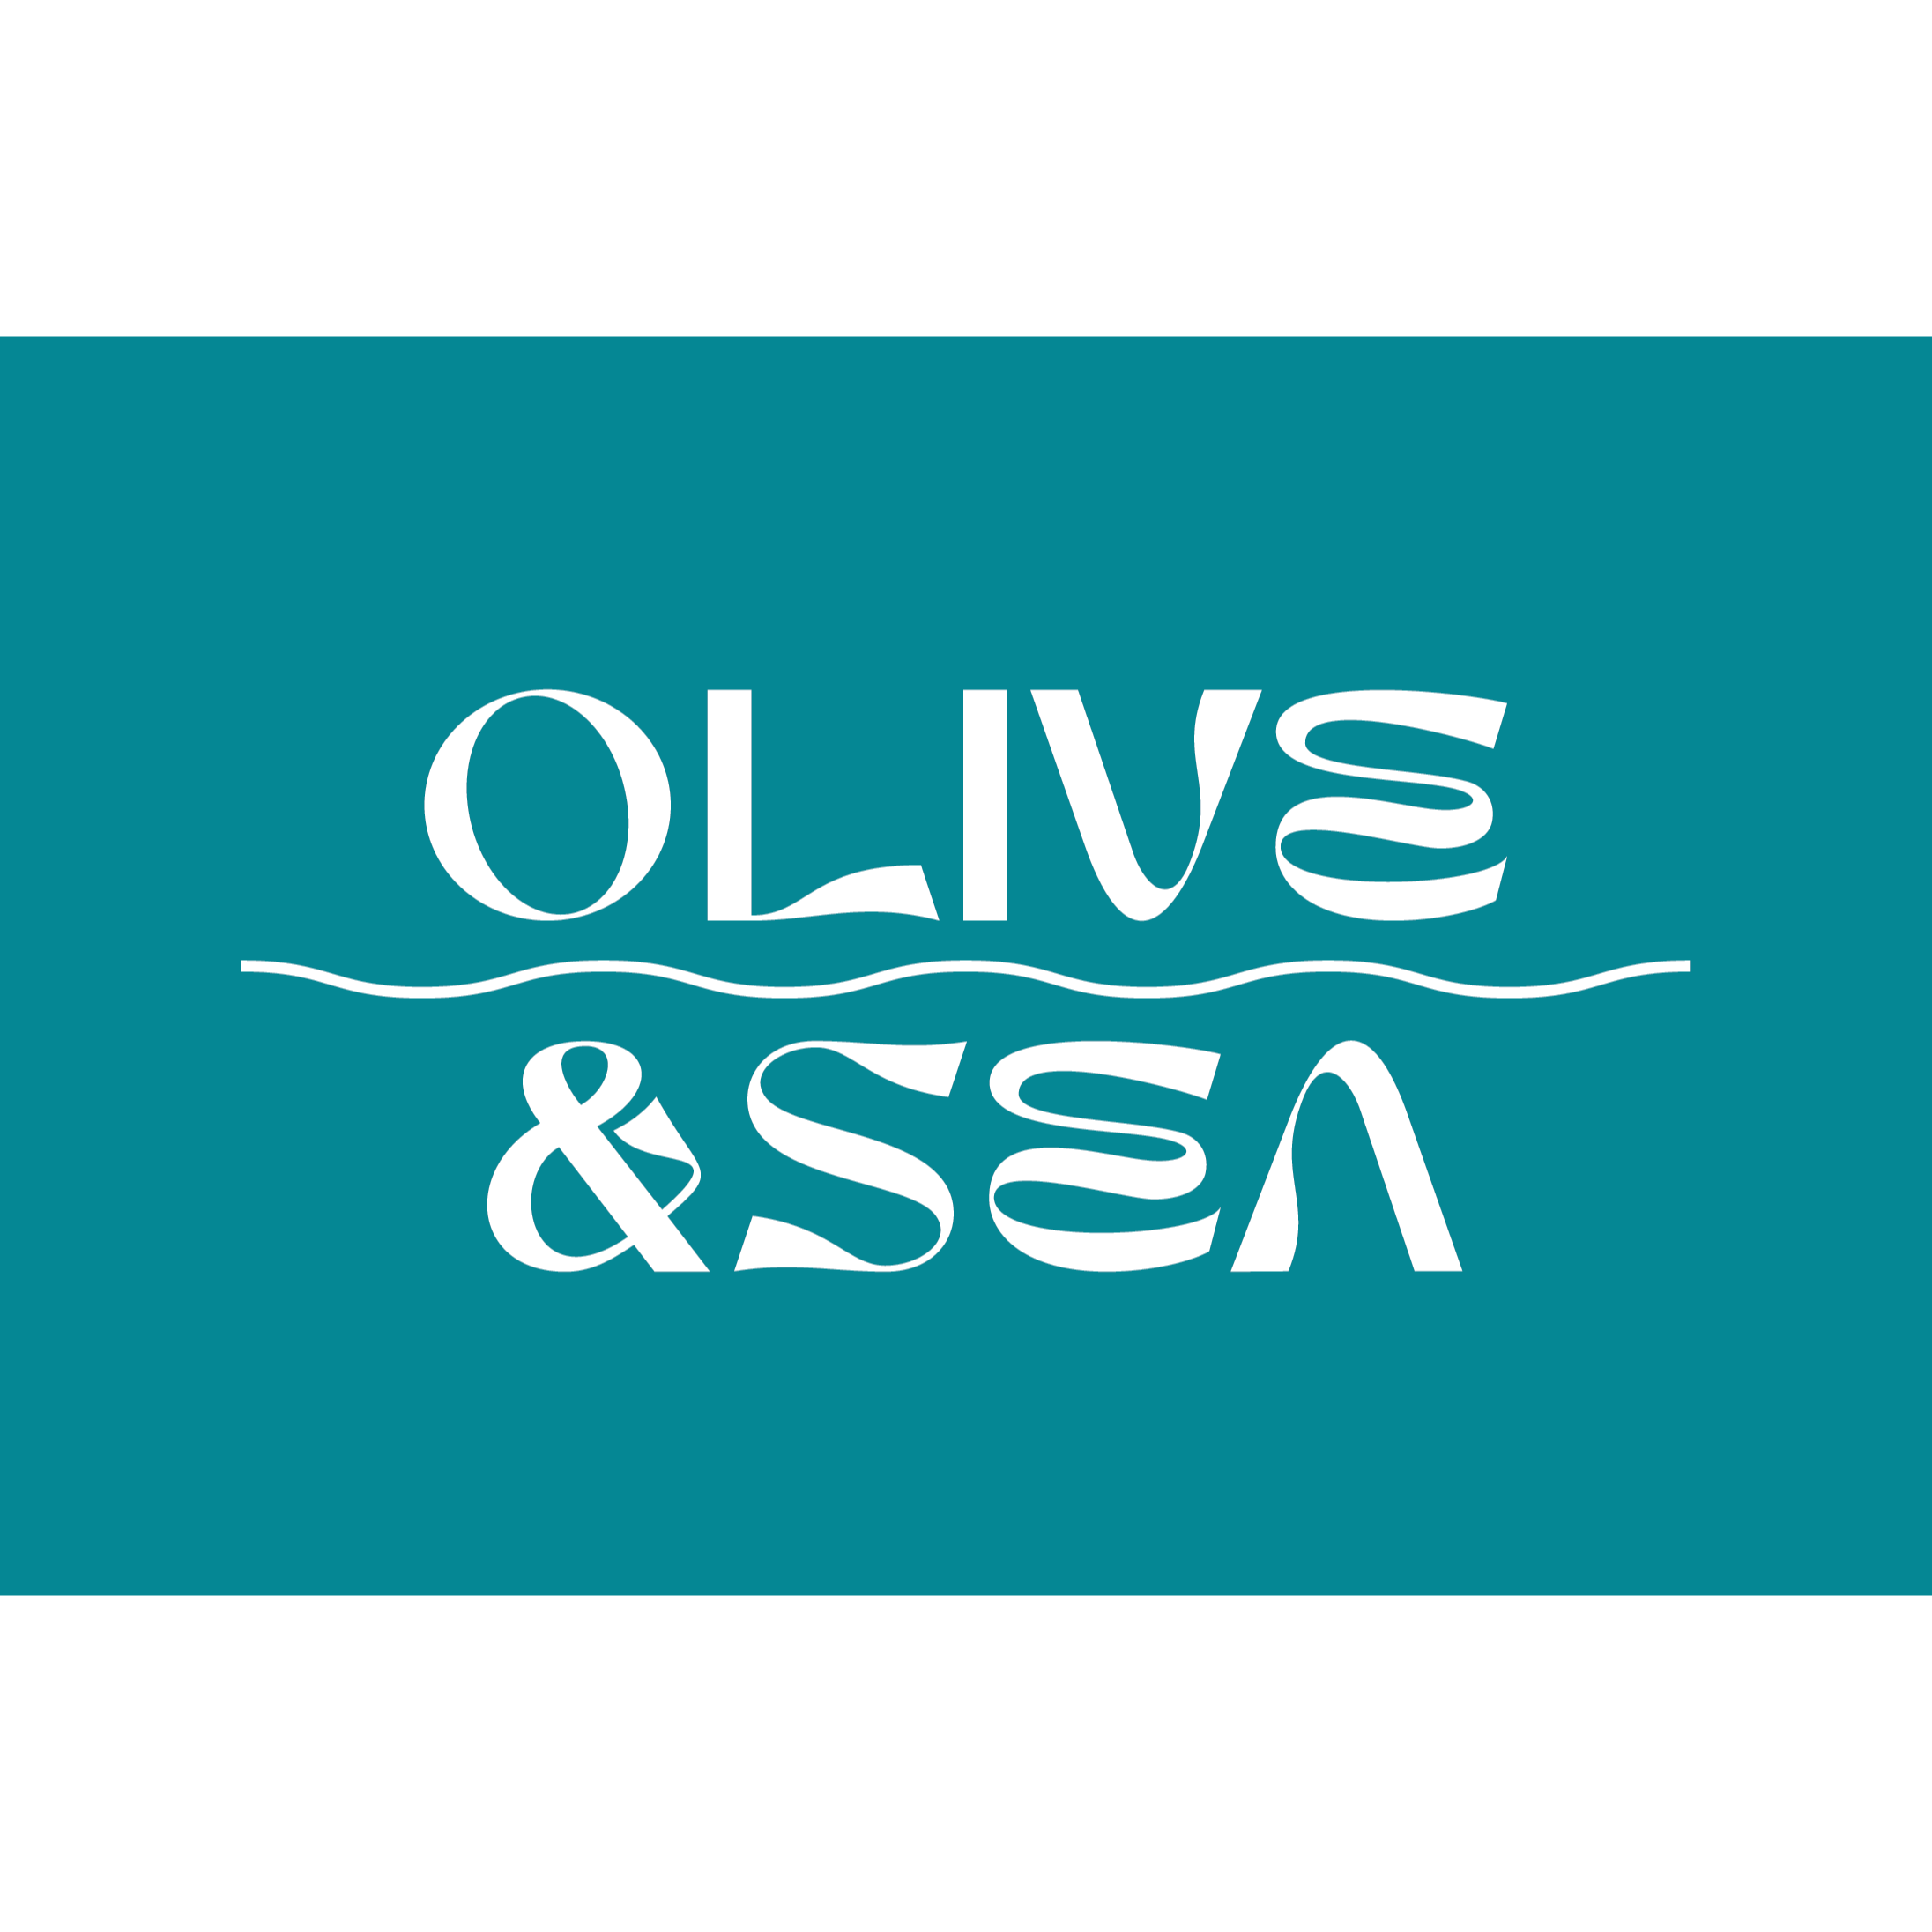 Olive & Sea